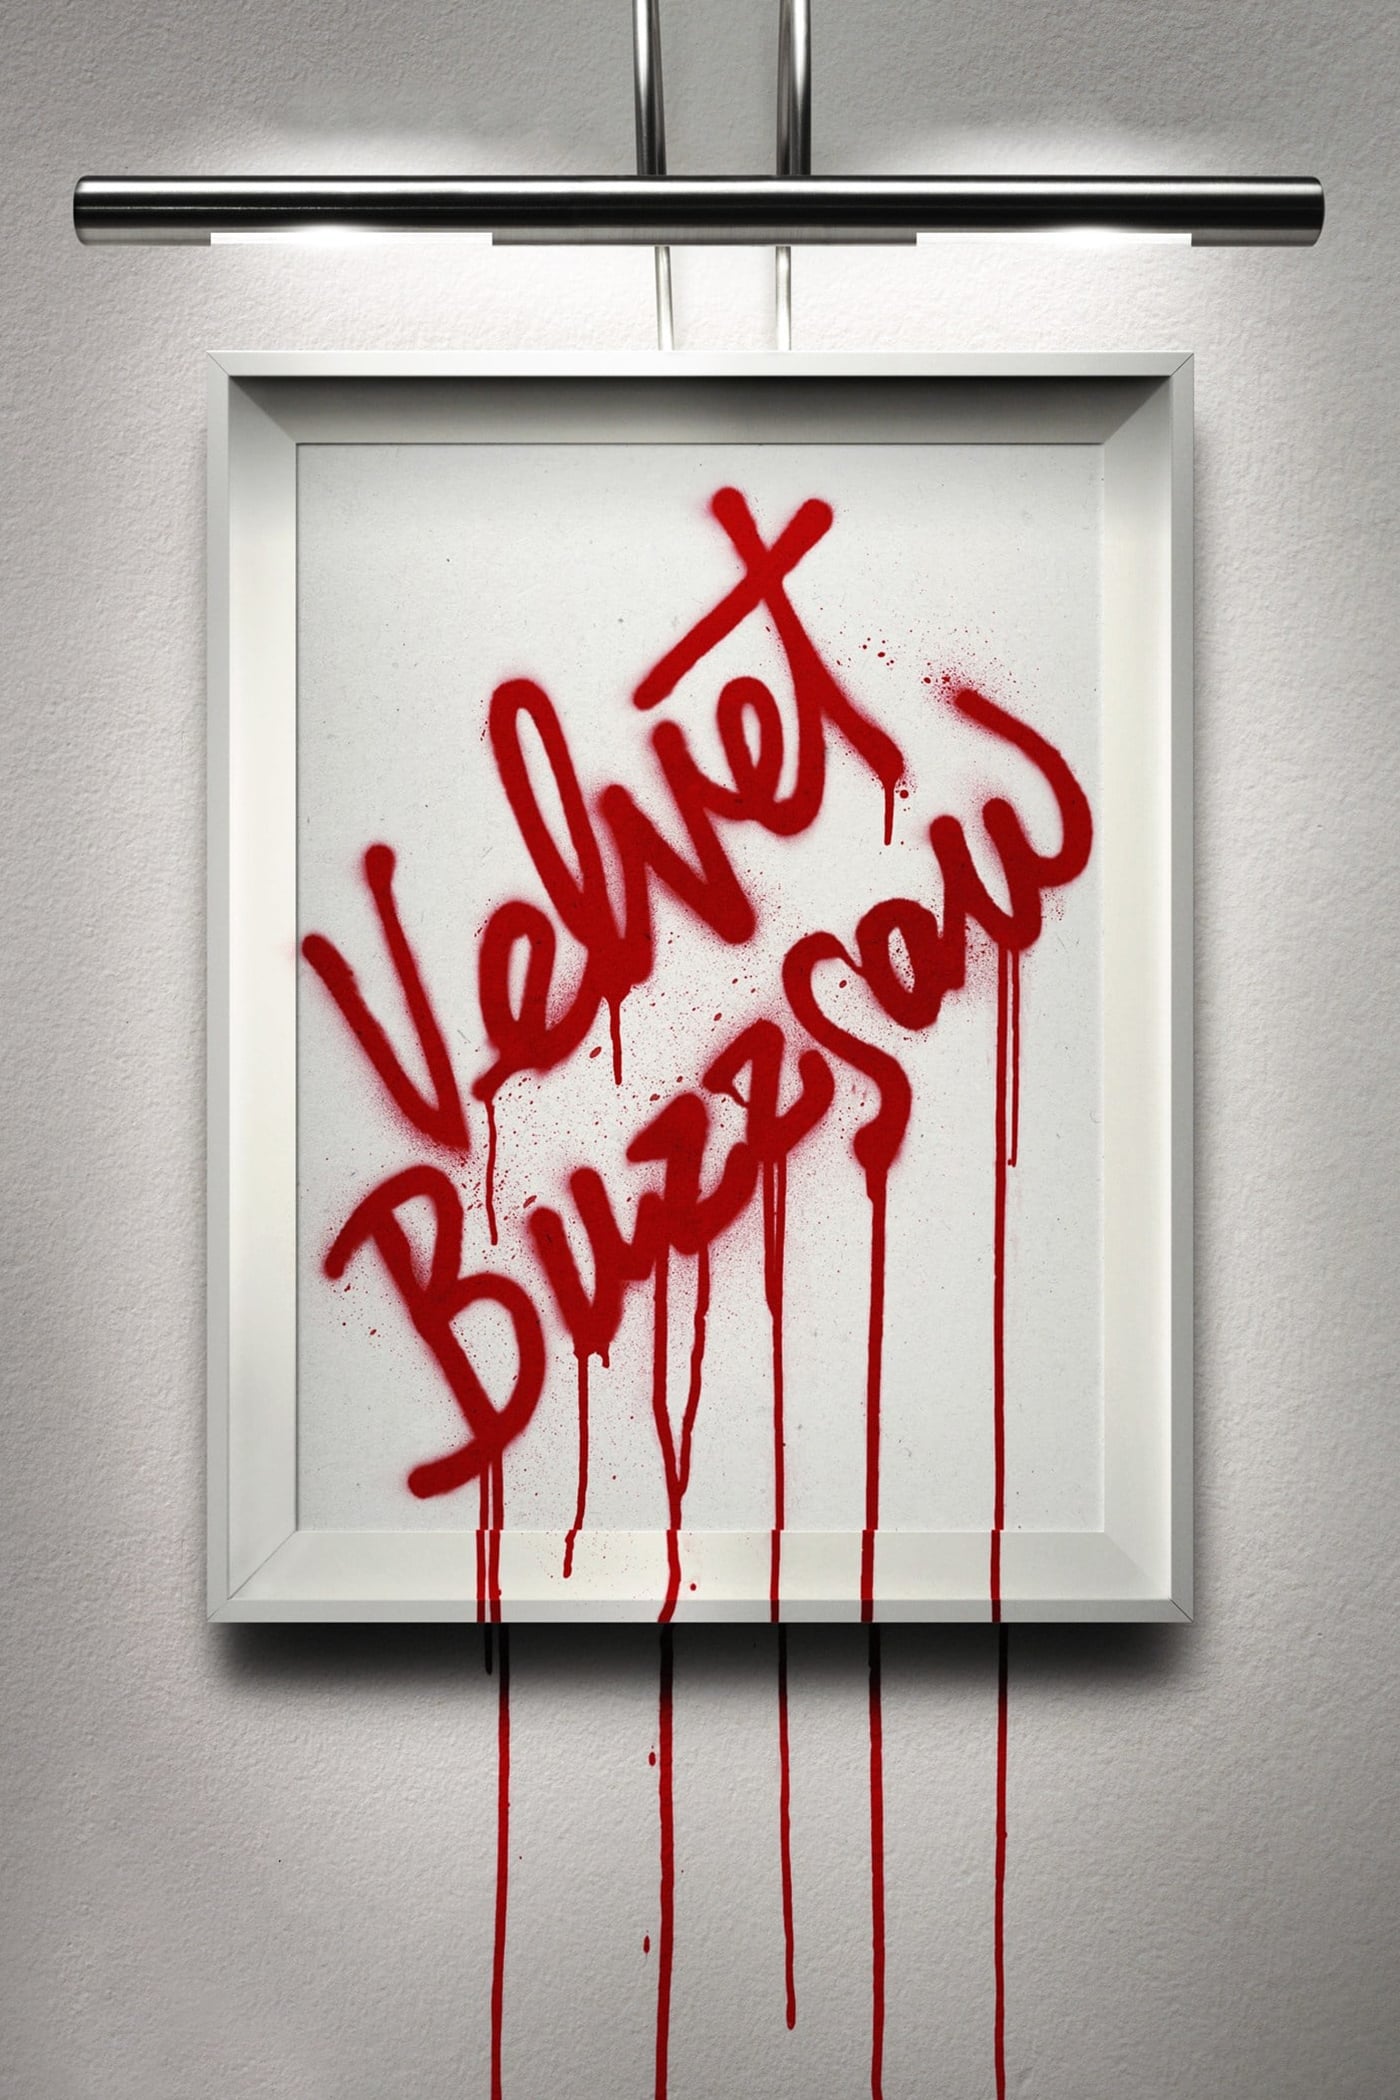 Poster for the movie "Velvet Buzzsaw"